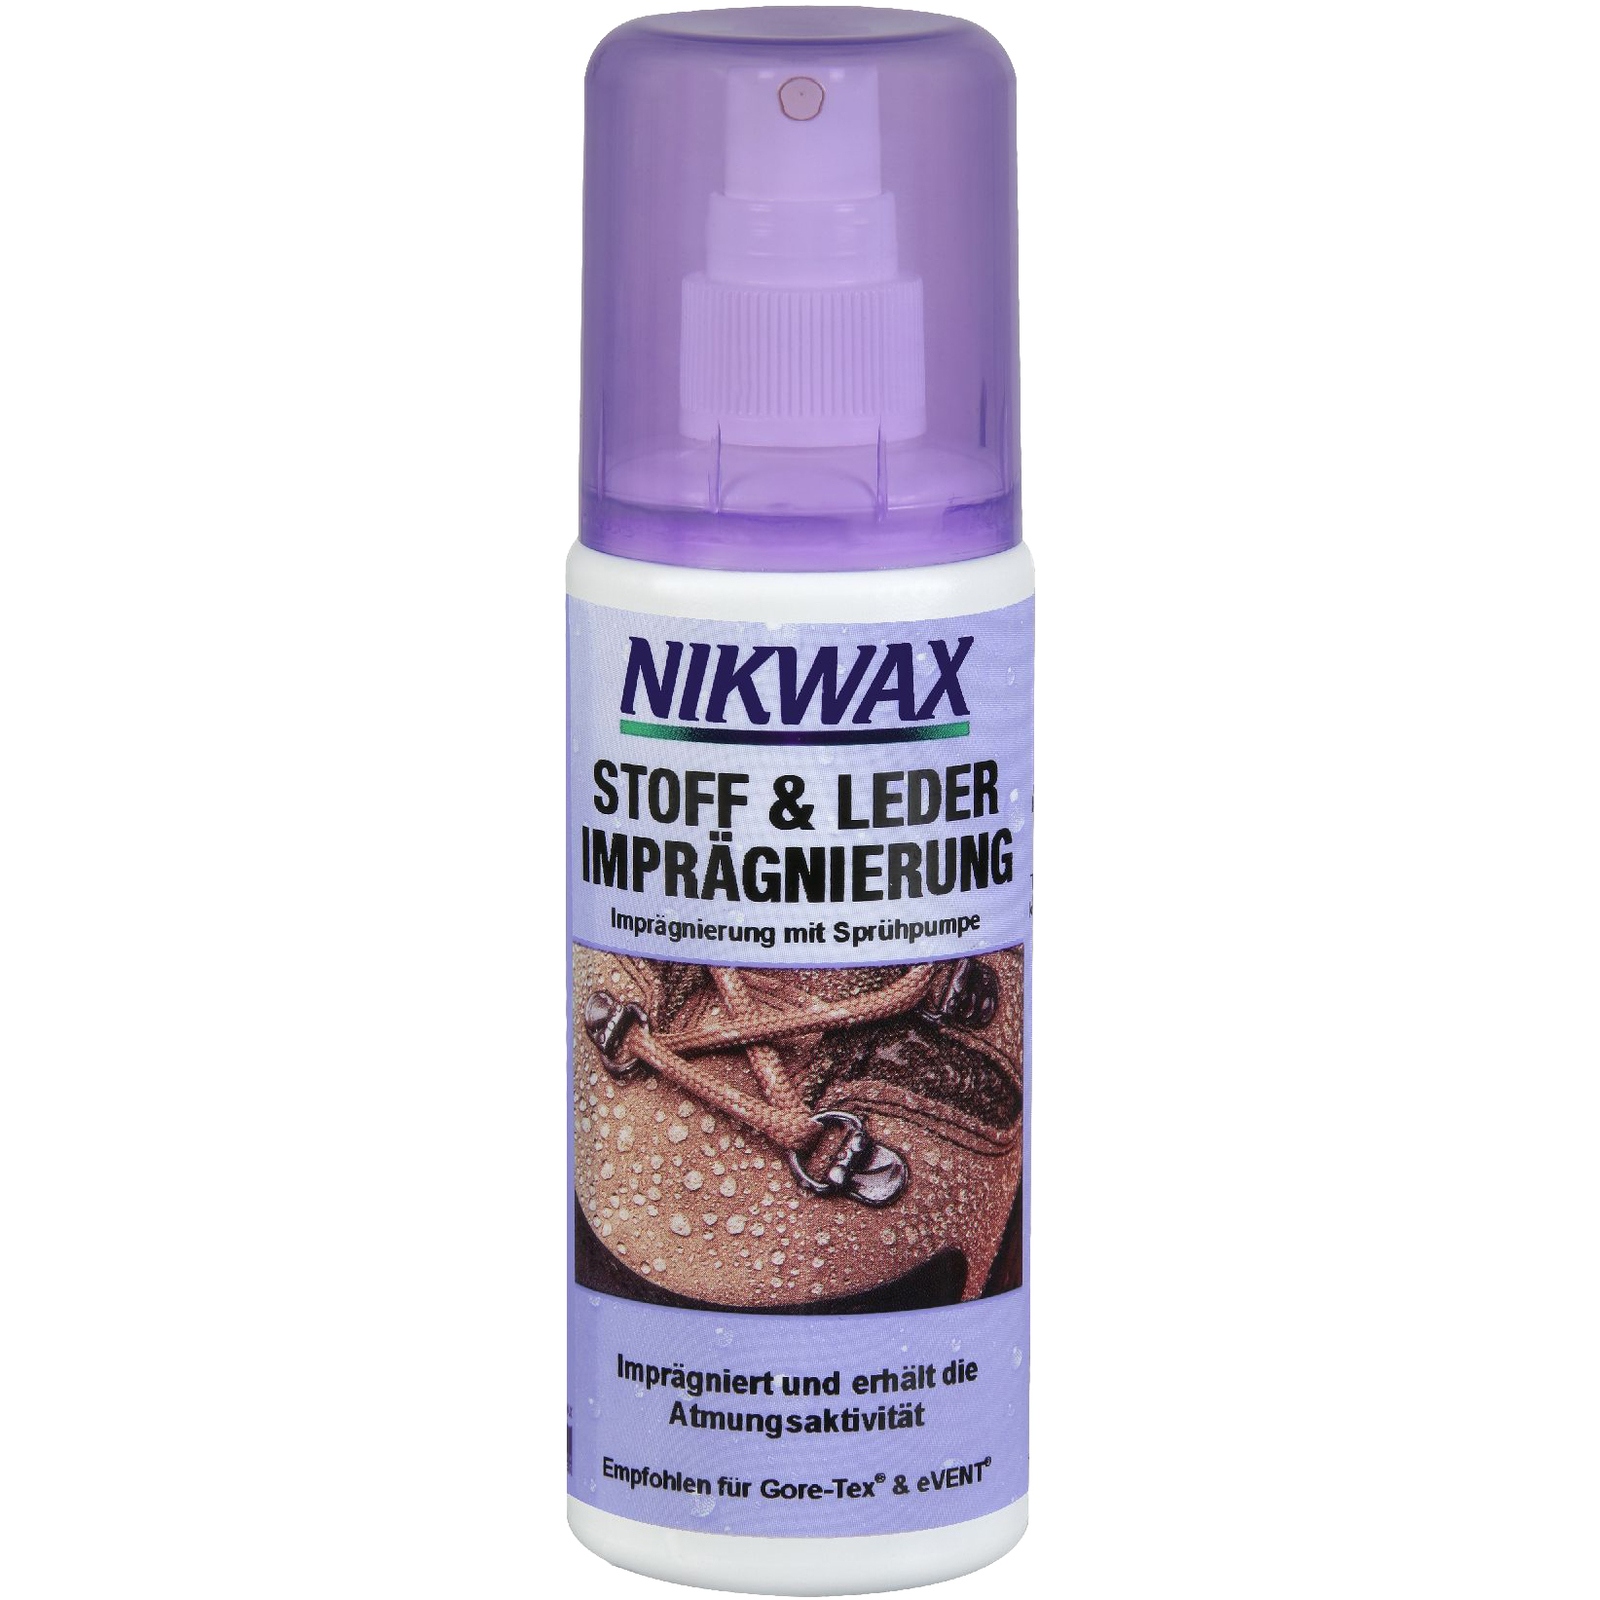 Bild von Nikwax Stoff & Leder Imprägnierung Spray 125ml